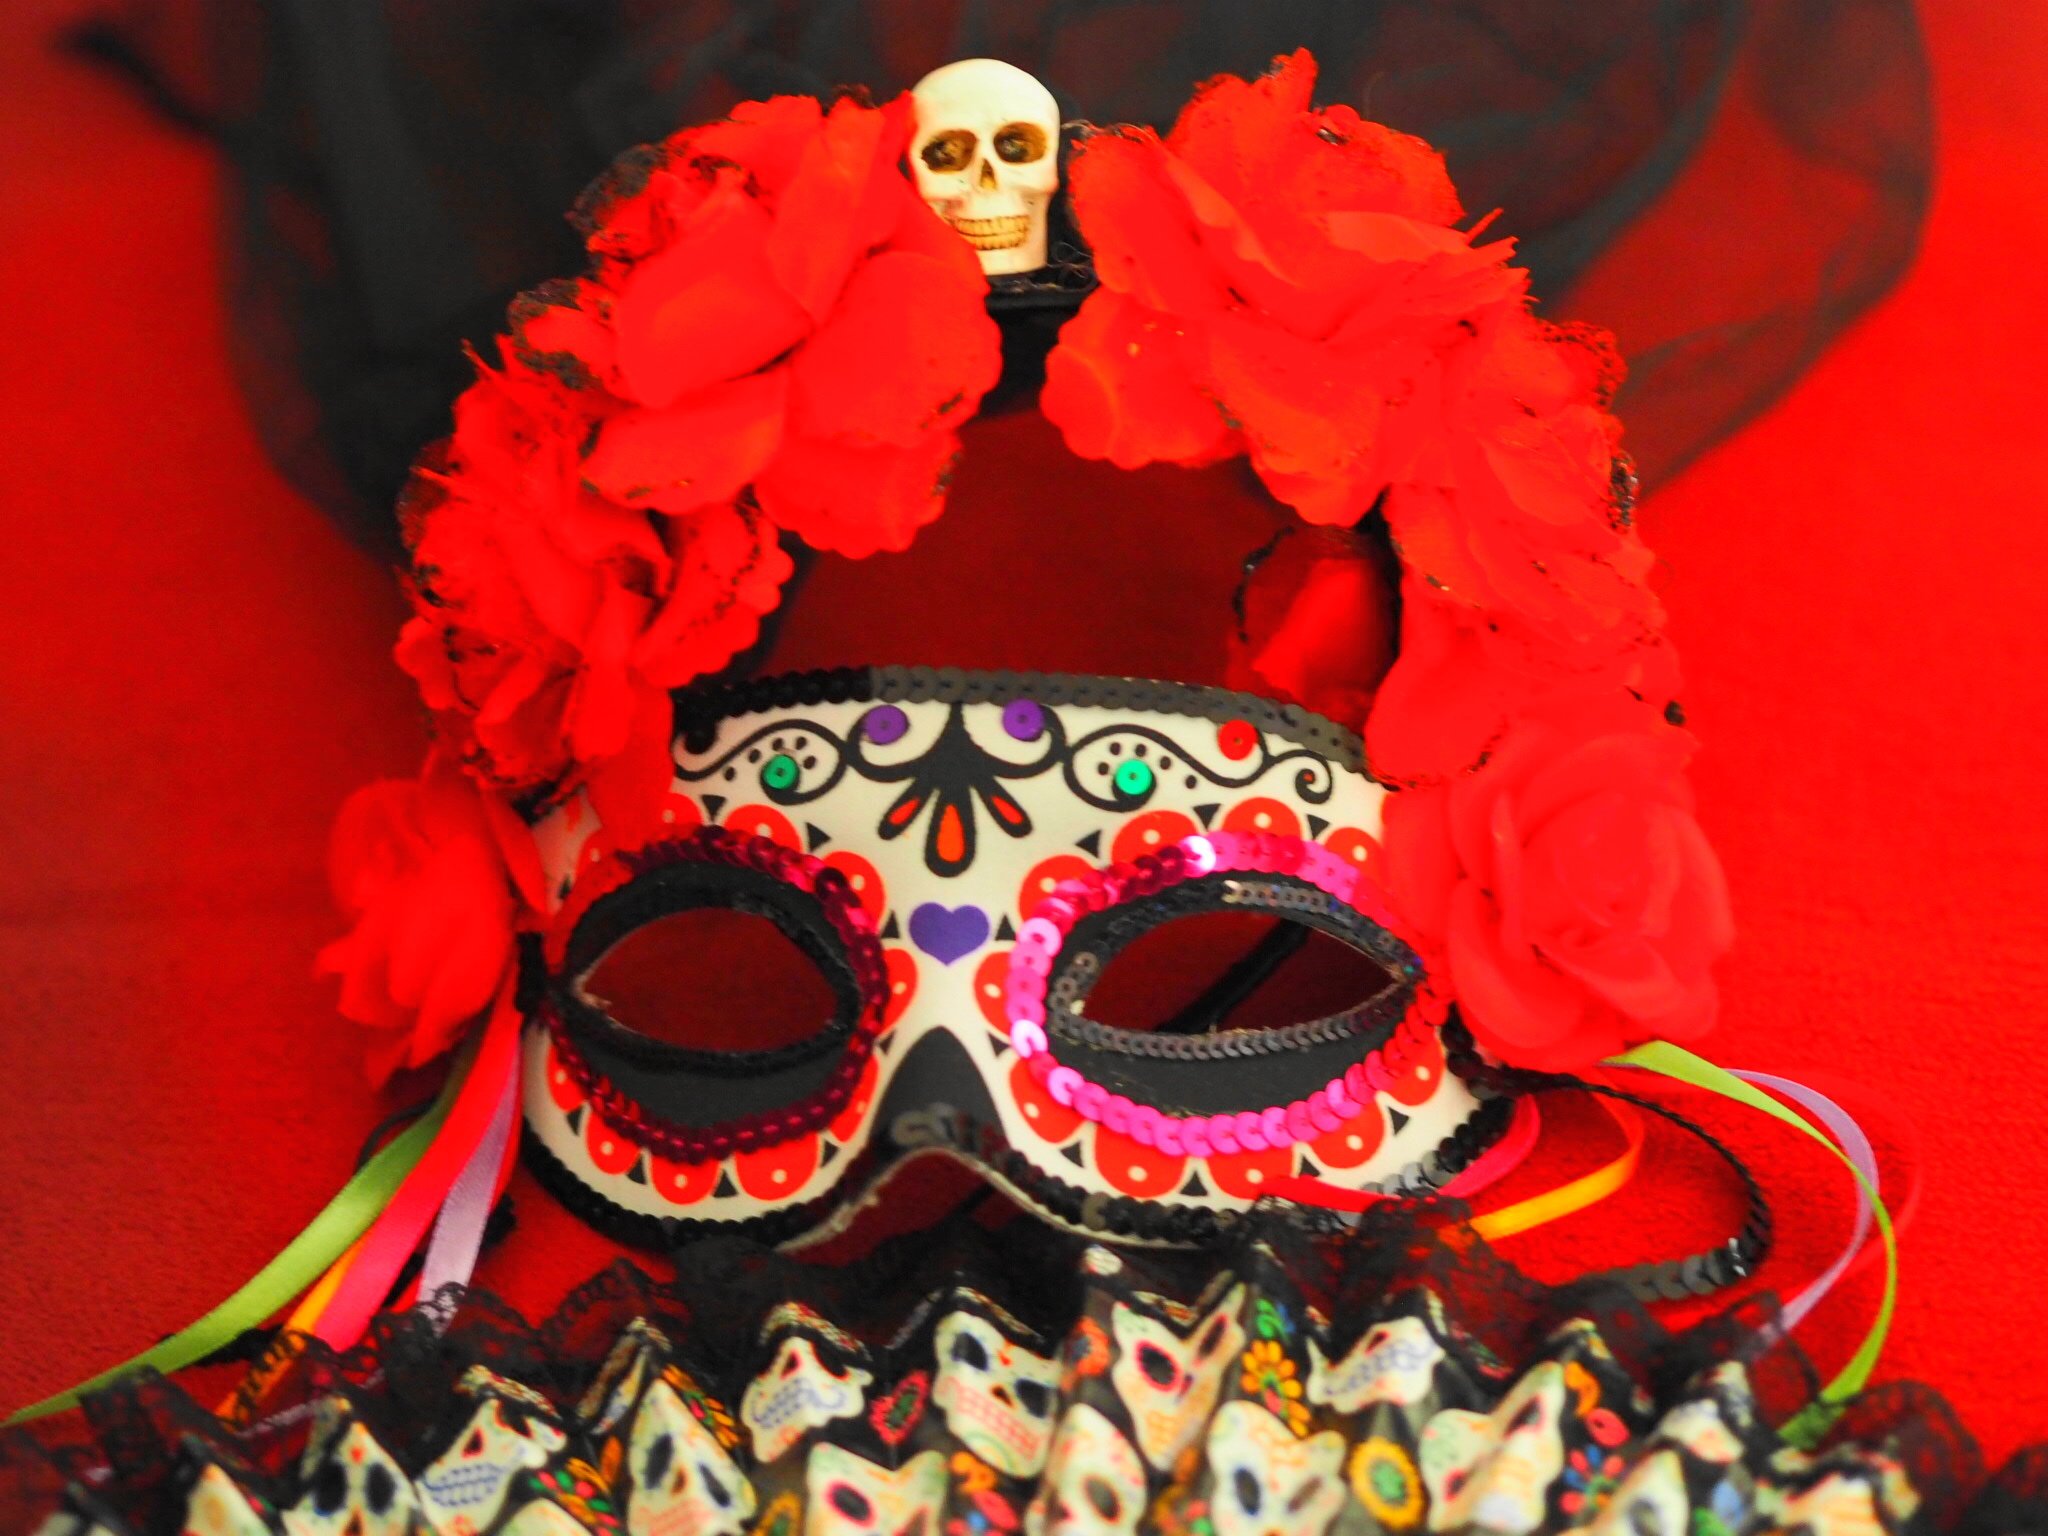 Heute zeige ich euch mein Halloween La Catrina Look ganz im Stil des Dia de los Muertos und erzähle euch ein wenig über die tollen Feierlichkeiten in Mexiko